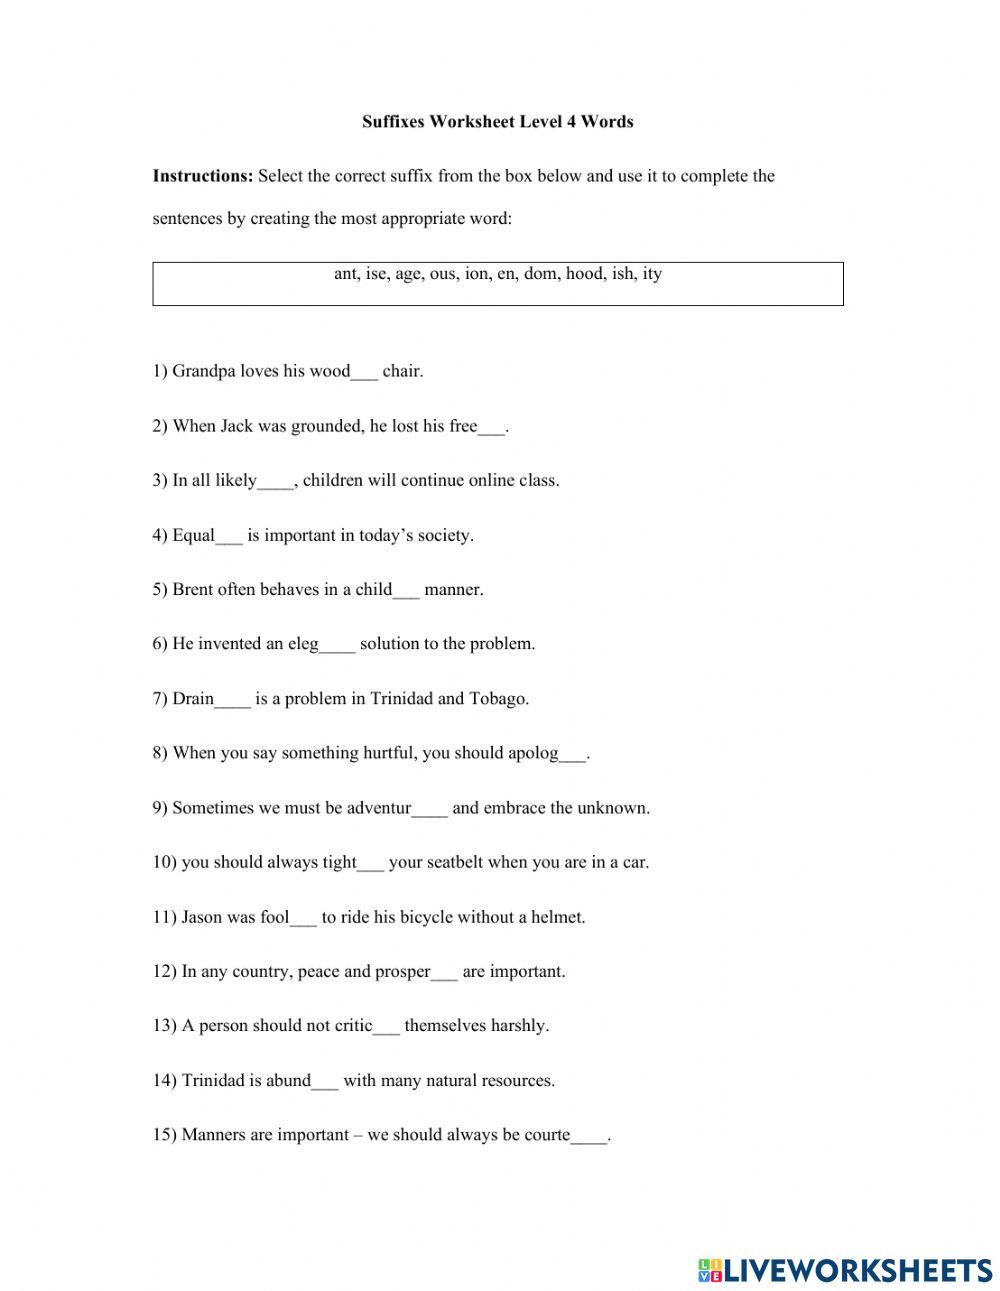 Suffixes Worksheet Standard 4